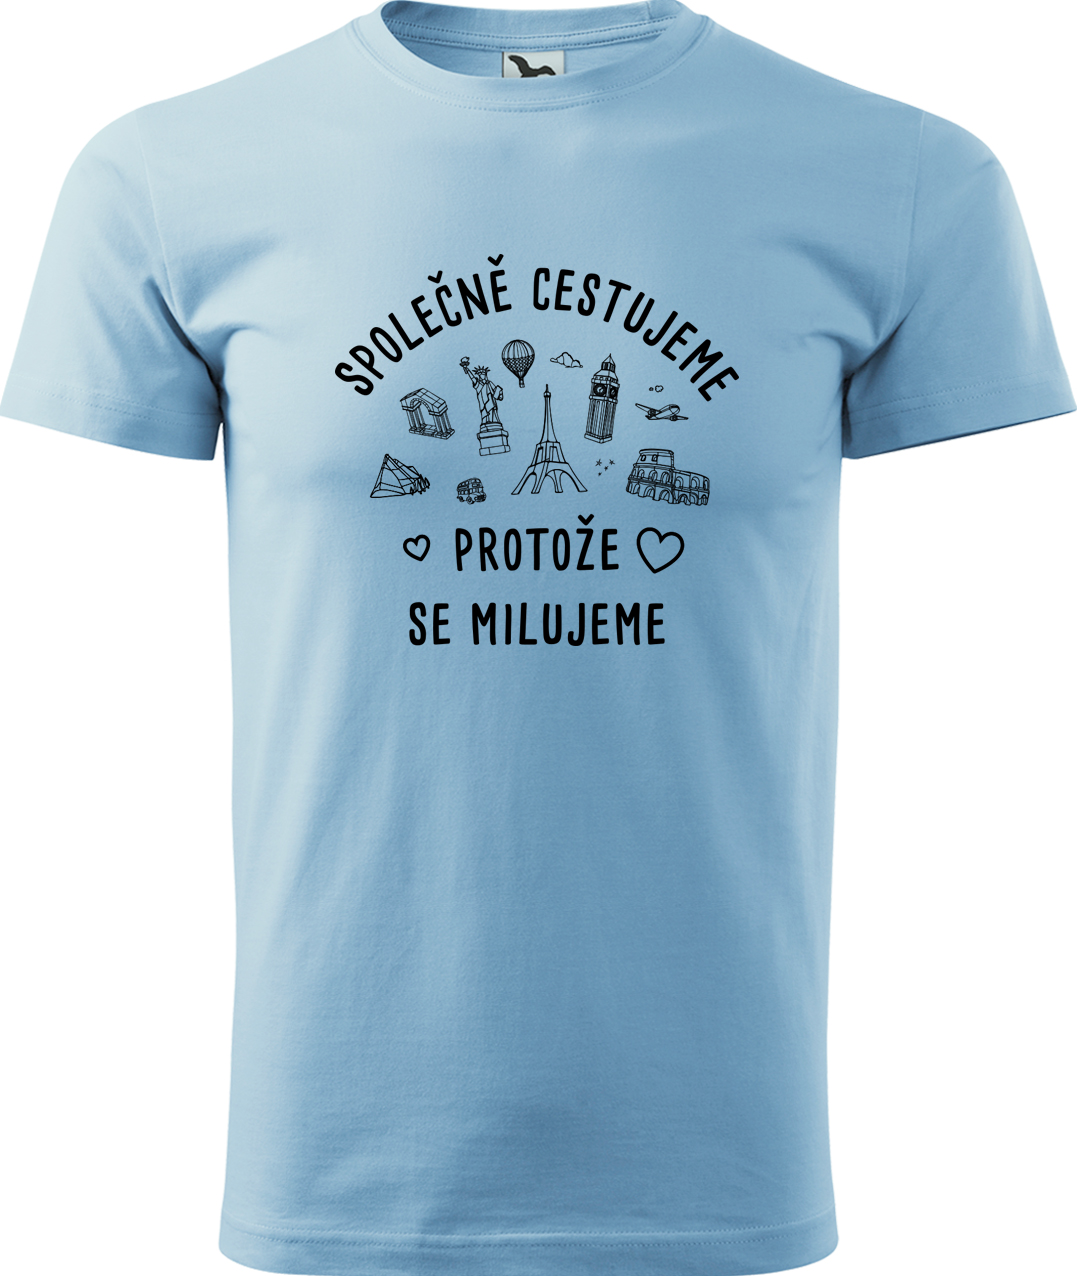 Pánské cestovatelské tričko - Společně cestujeme protože se milujeme Velikost: 4XL, Barva: Nebesky modrá (15), Střih: pánský